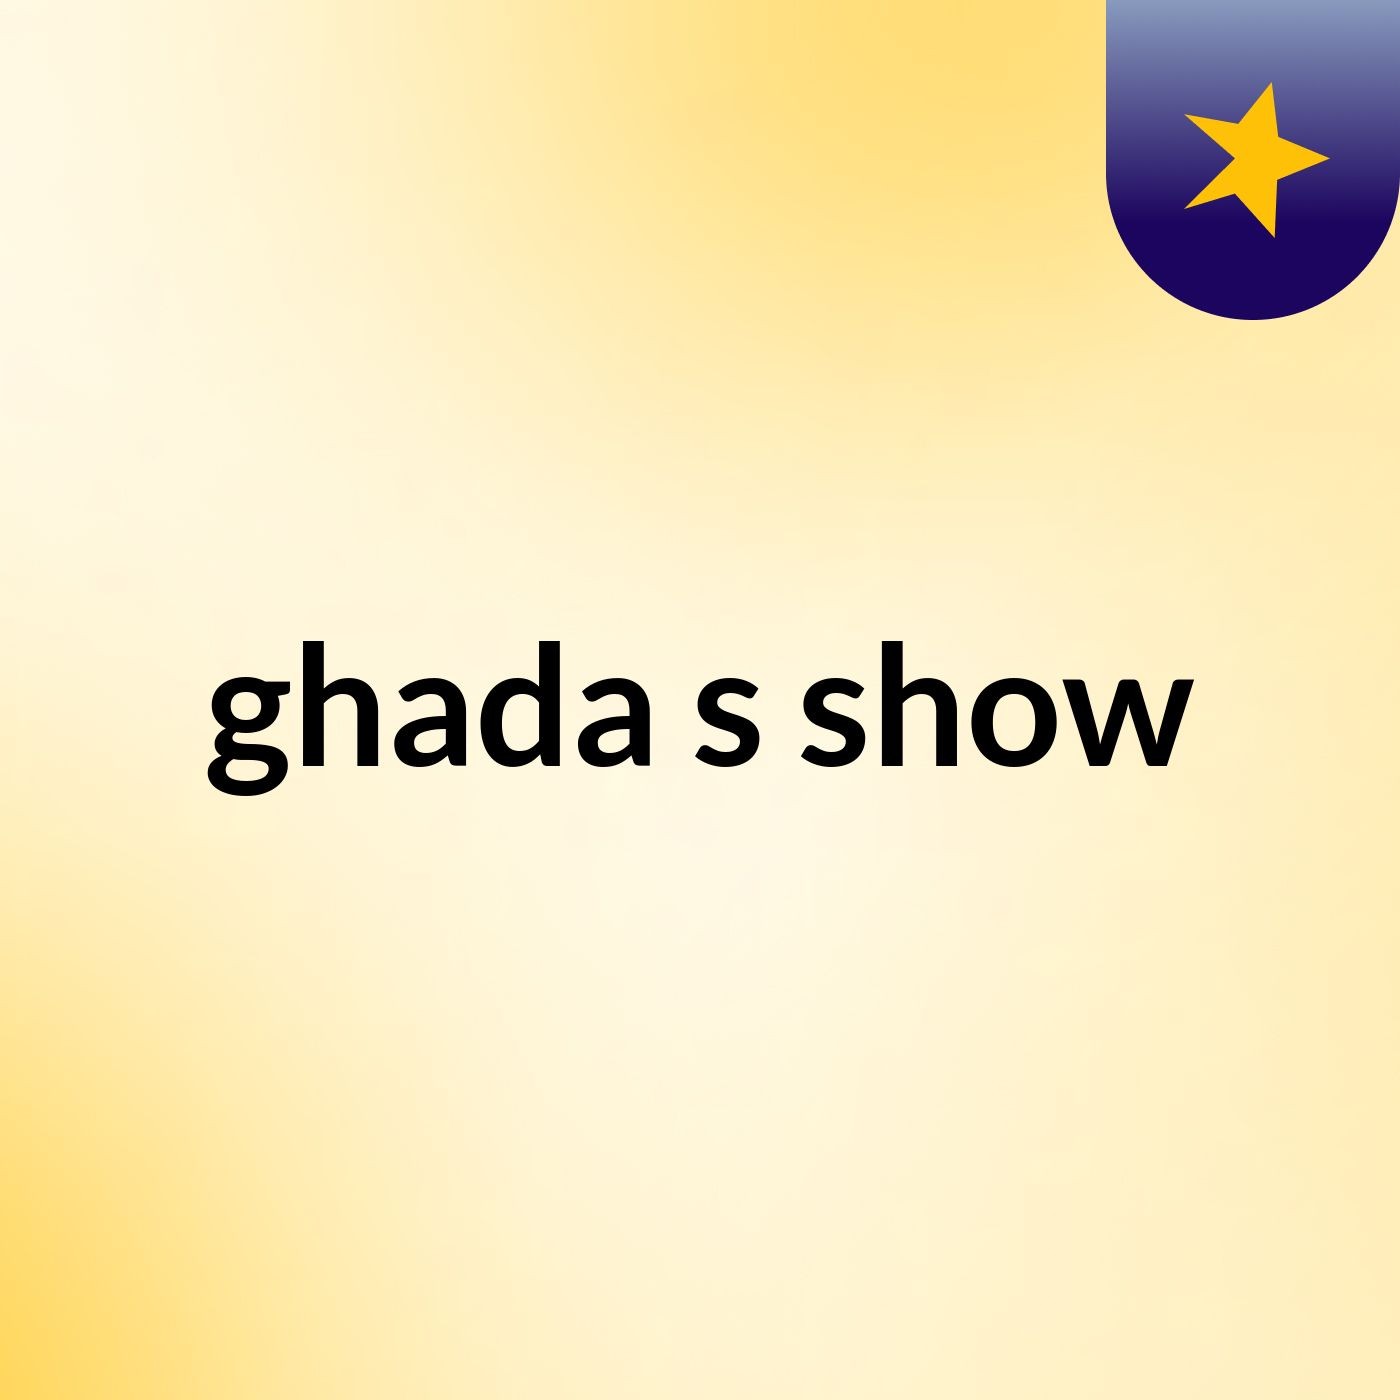 ghada's show